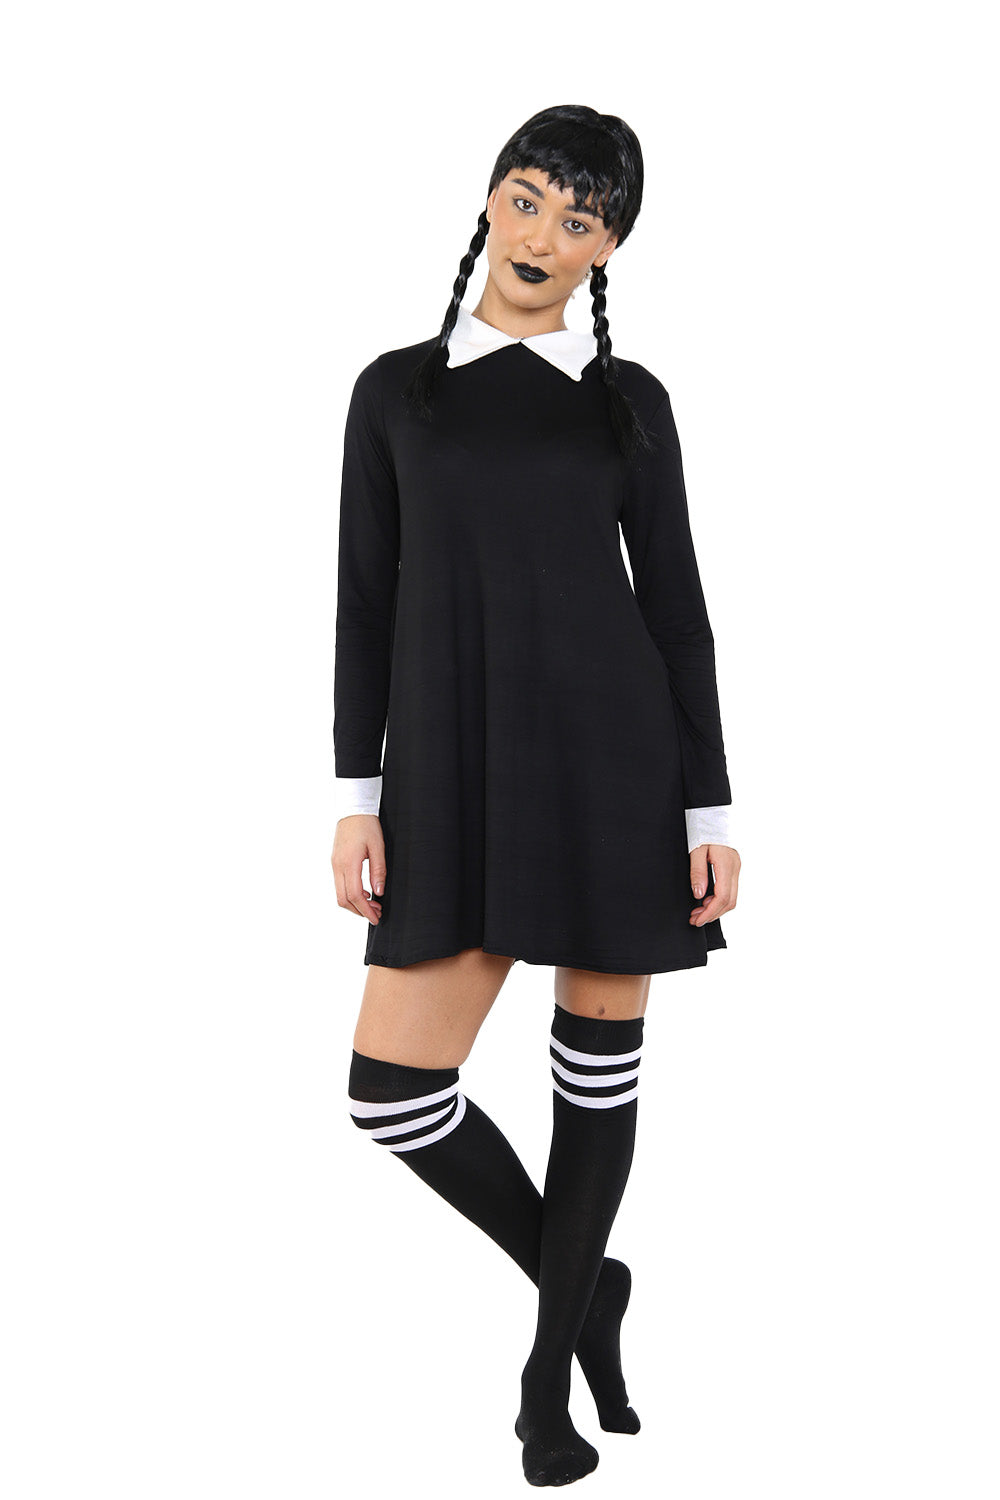 Wednesday Addams 3-Piece Costume